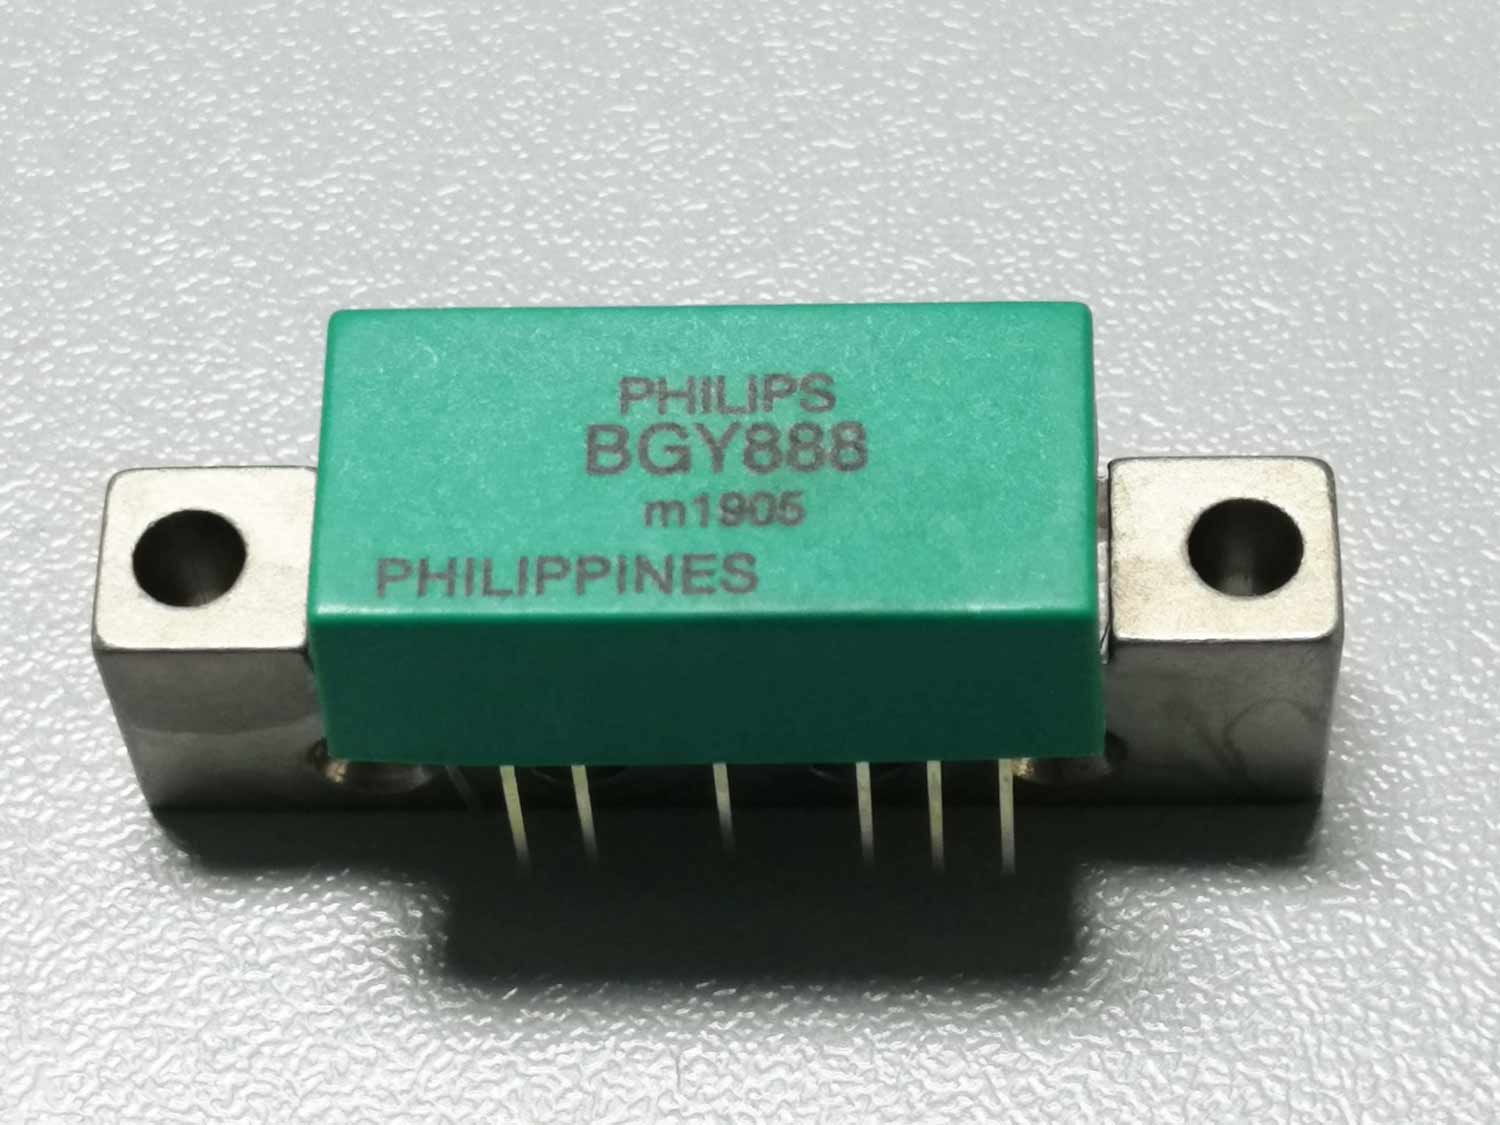 BGY888 -VHF/UHF Power amplifier Module